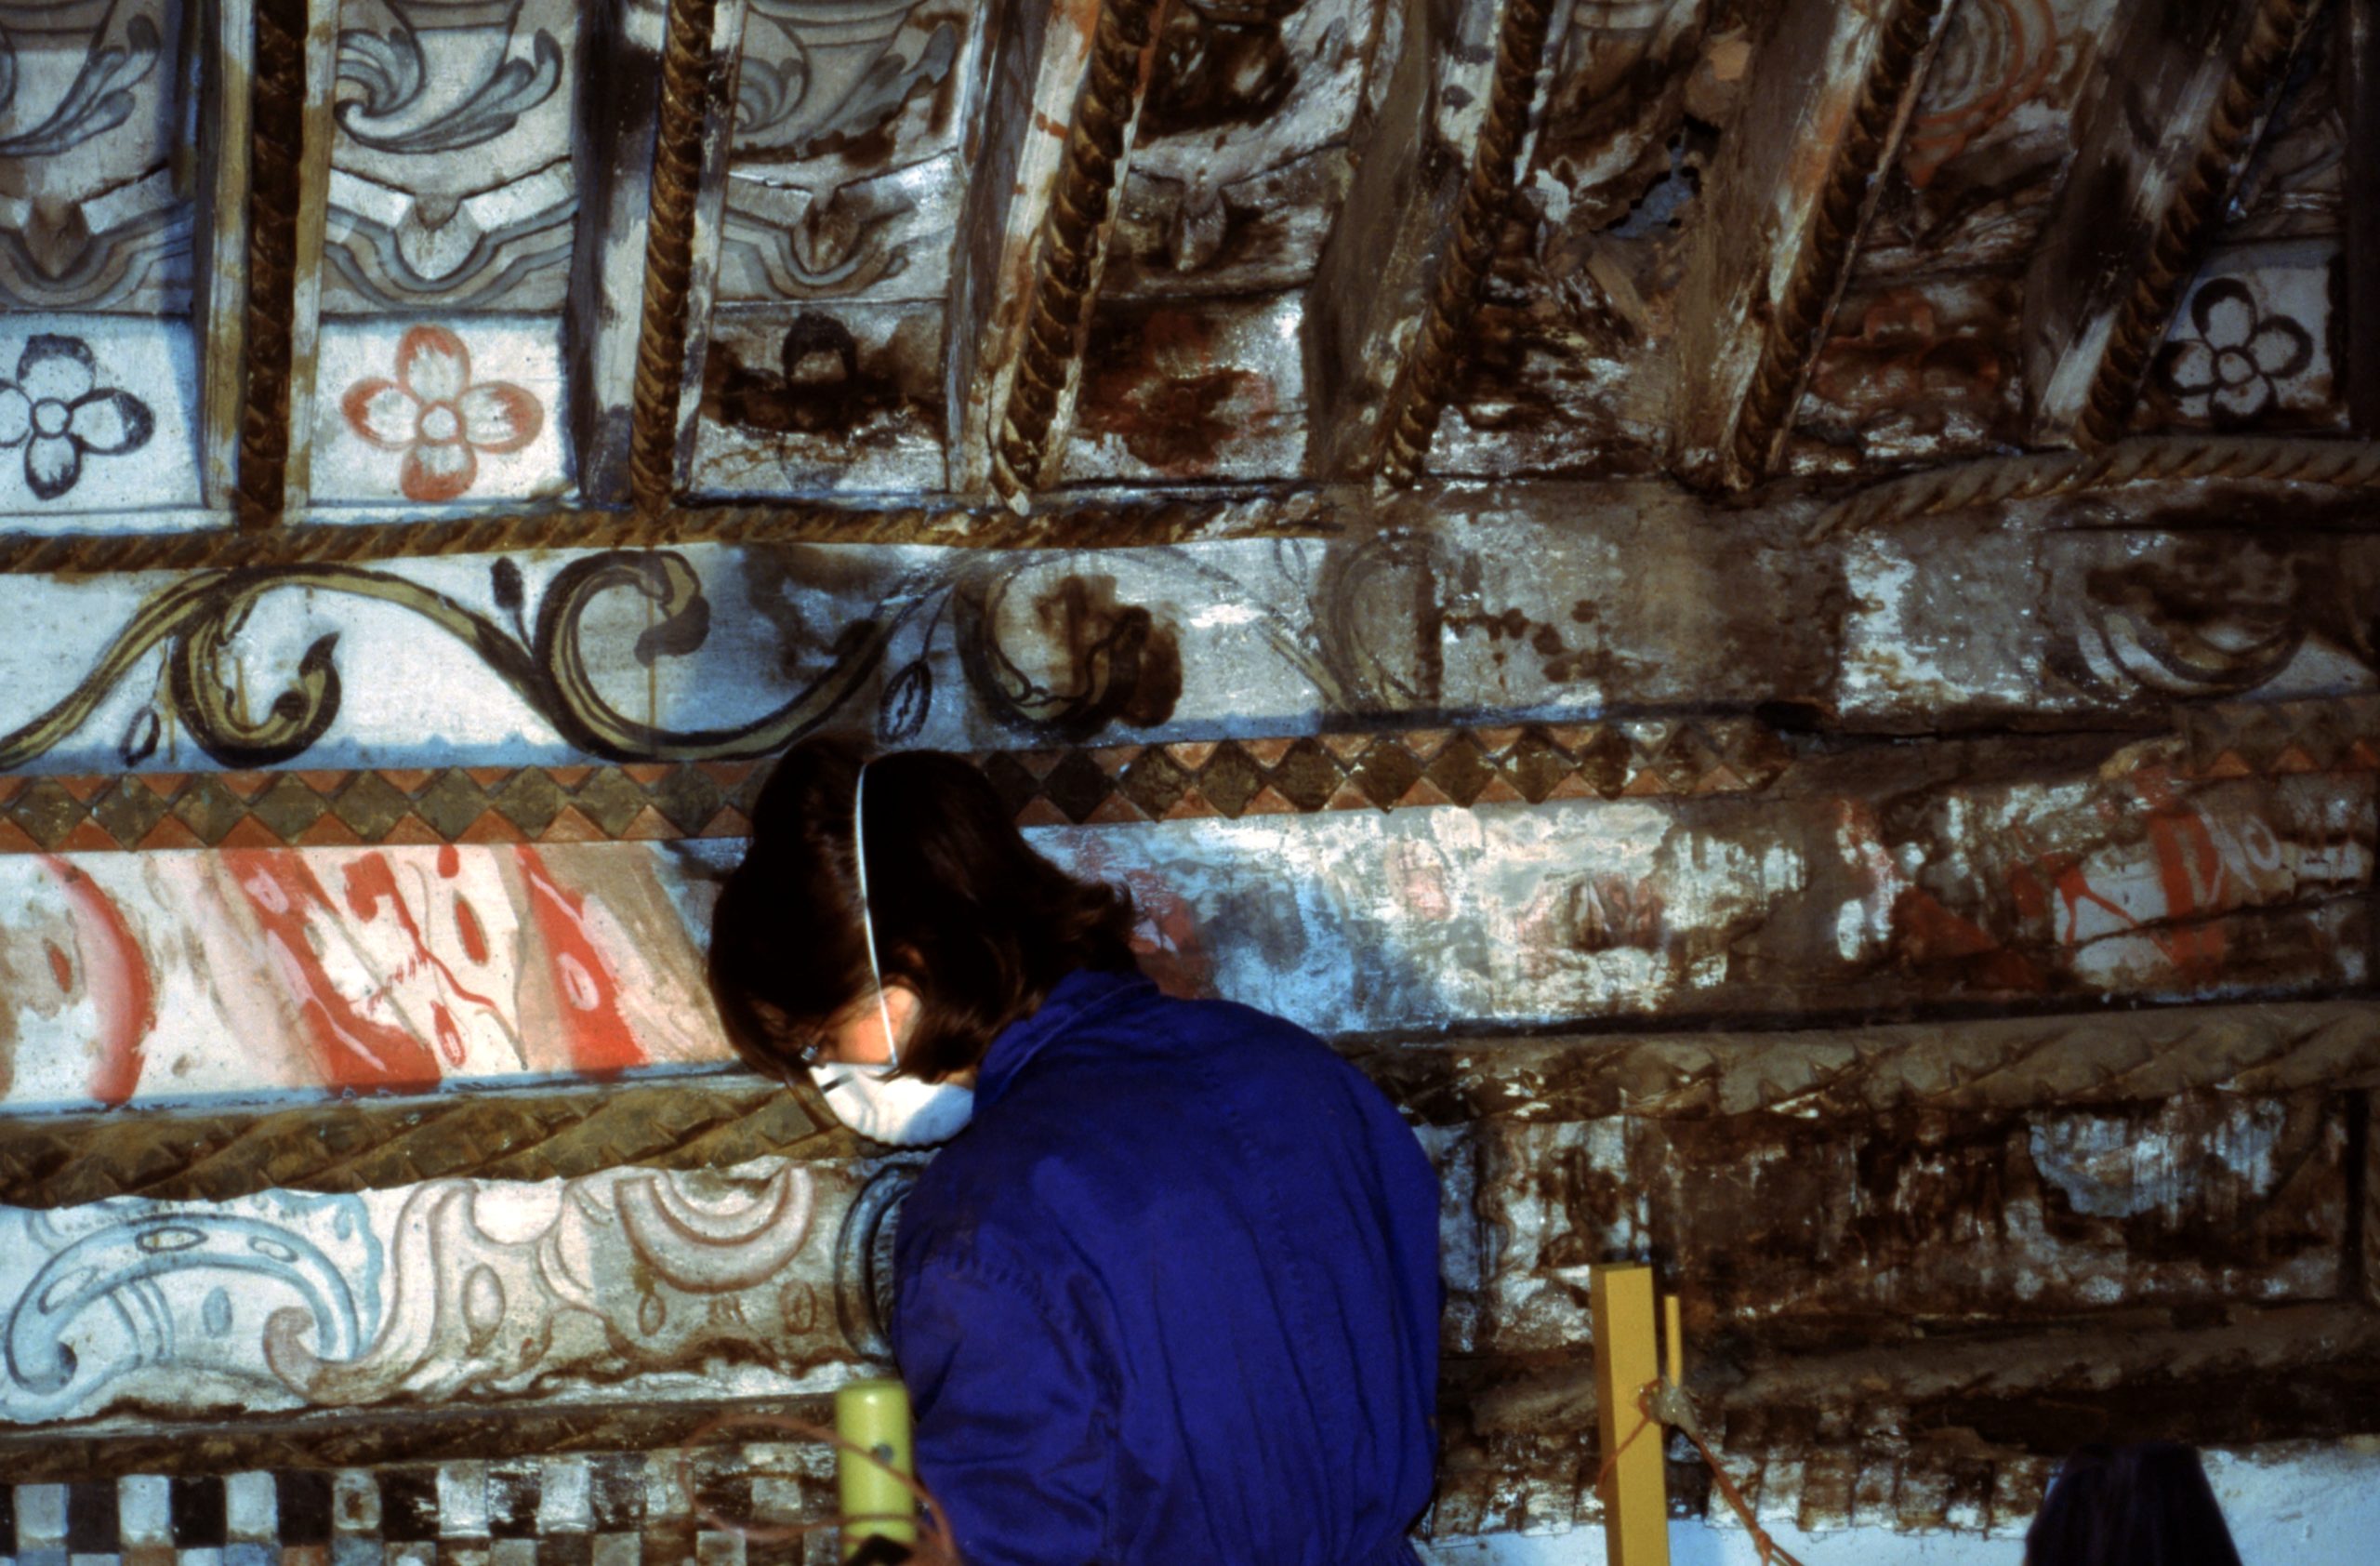 Trabajos de conservación y restauración de la techumbre en madera policromada de la Iglesia de Paramio, Zamora, España